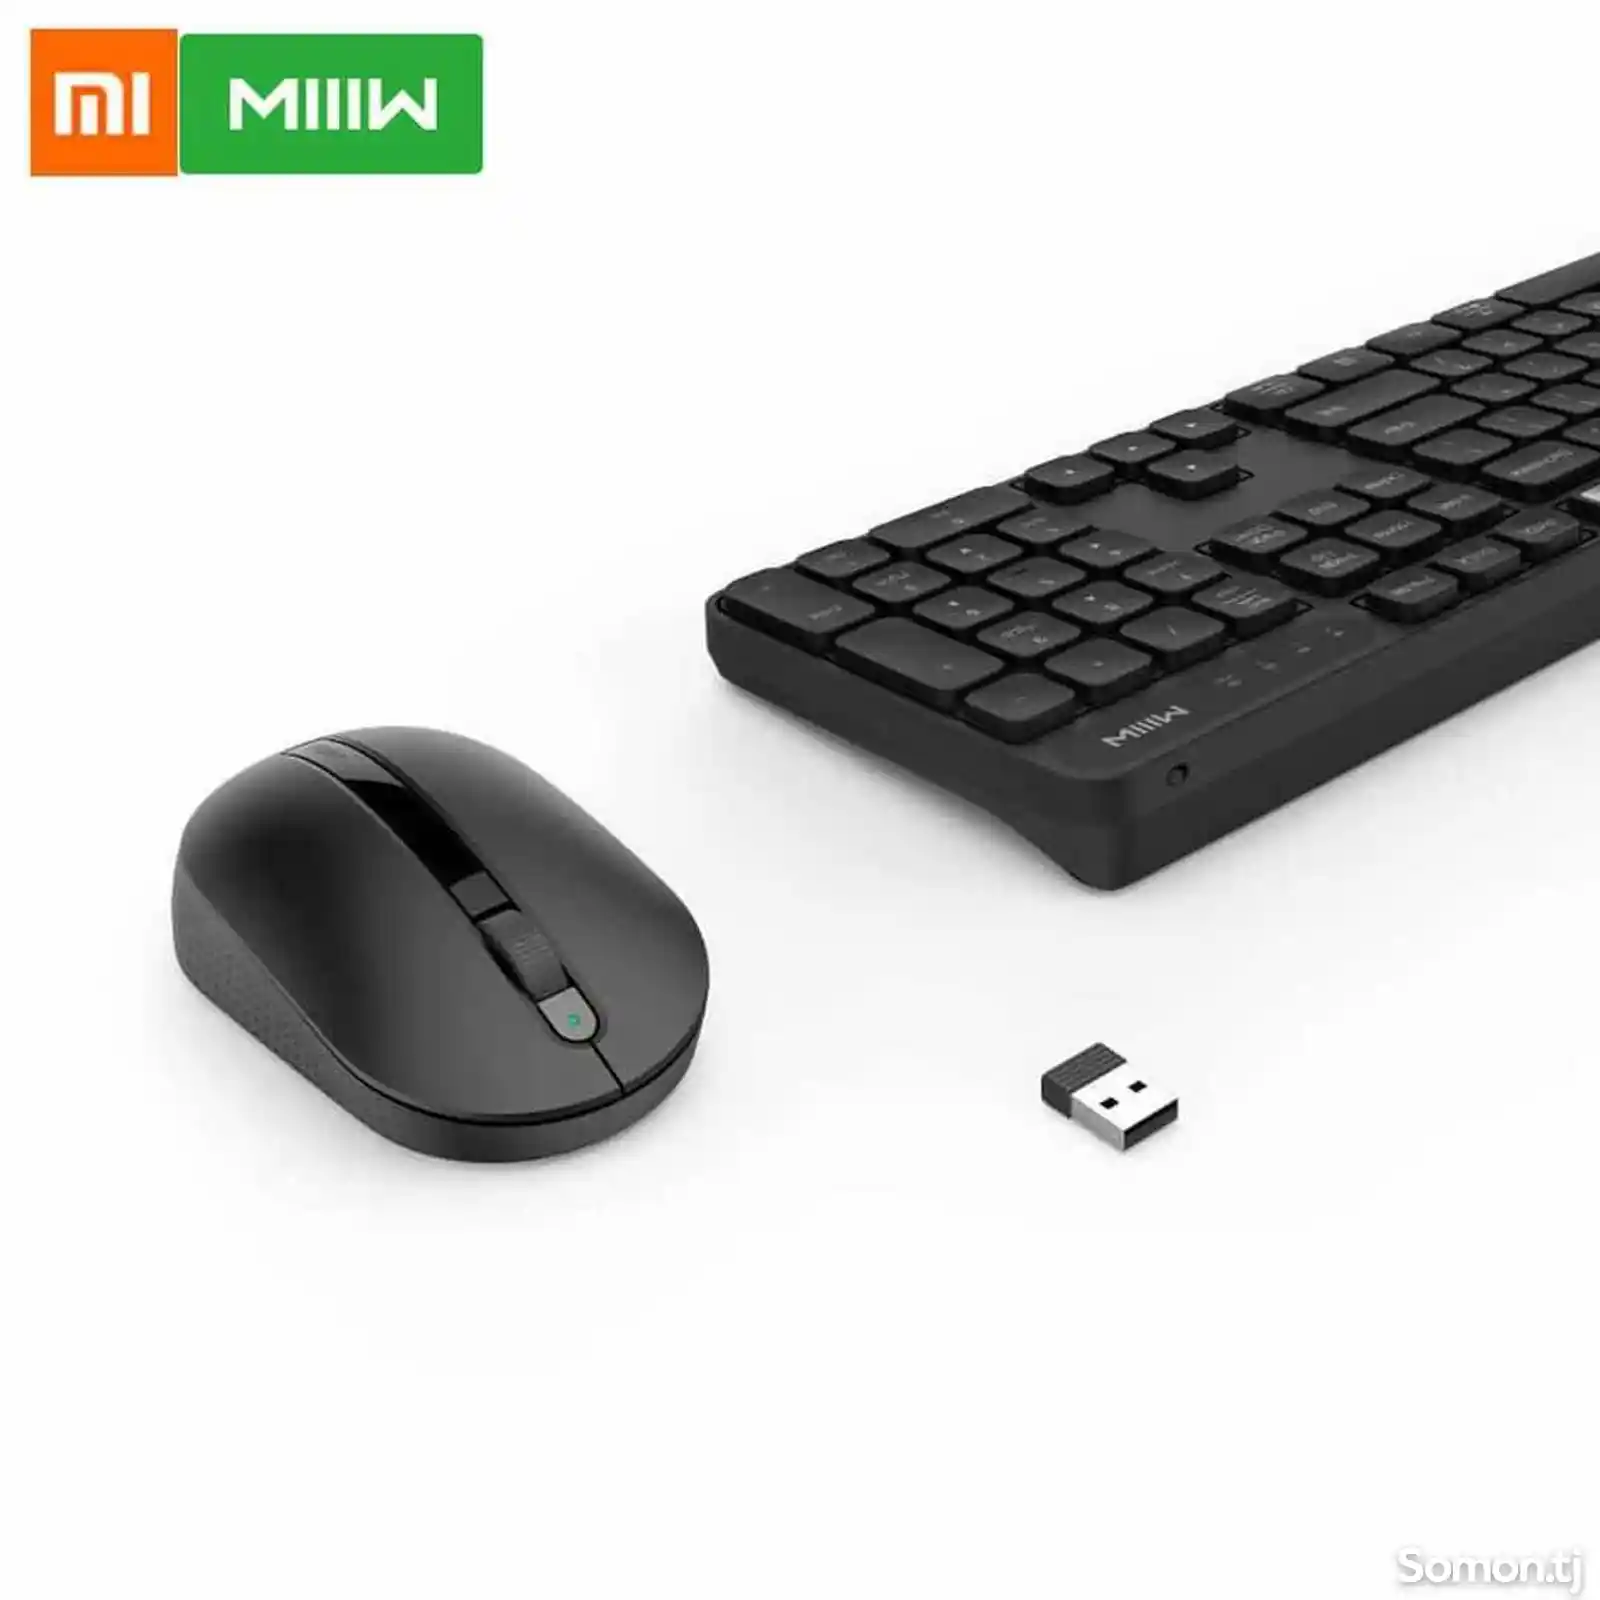 Комплект клавиатура и мышь Xiaomi MiiiW wireless keyboard and mouse se-5